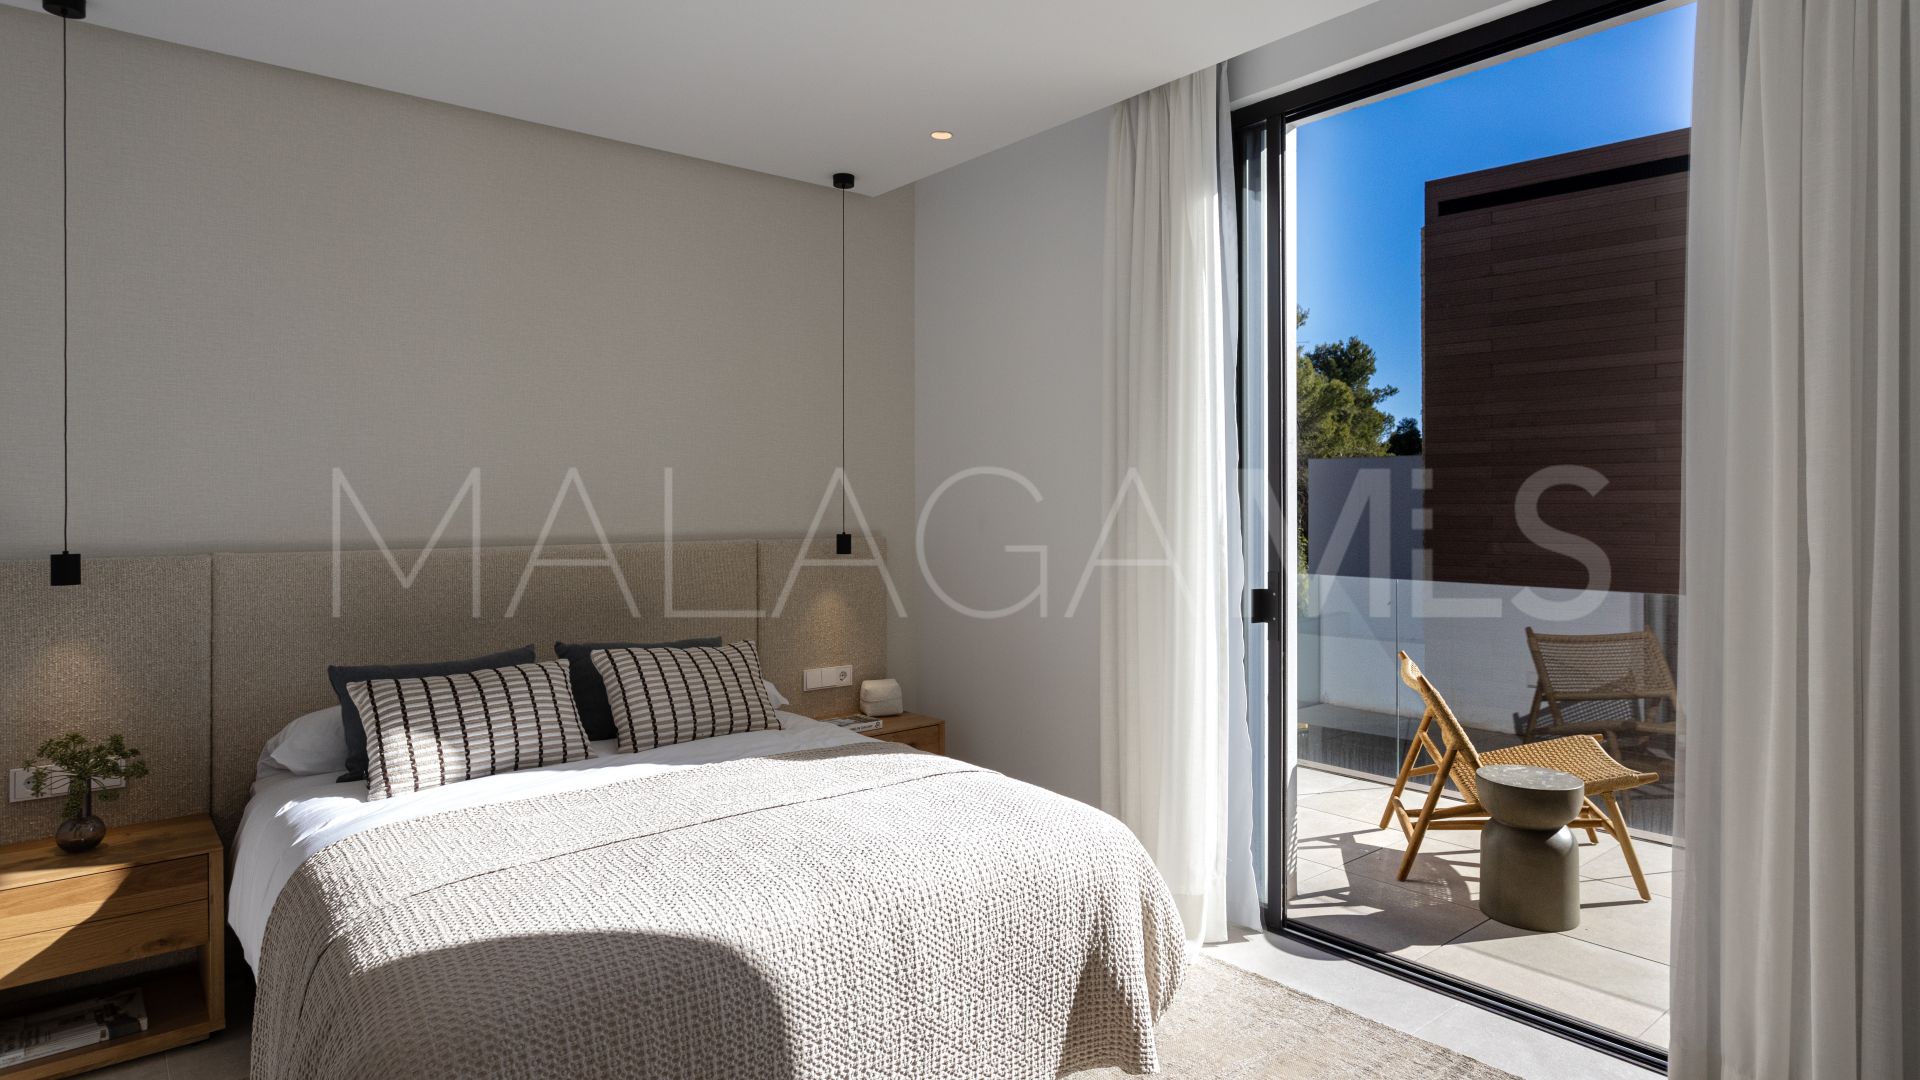 Villa de 4 bedrooms for sale in Marbella Centro